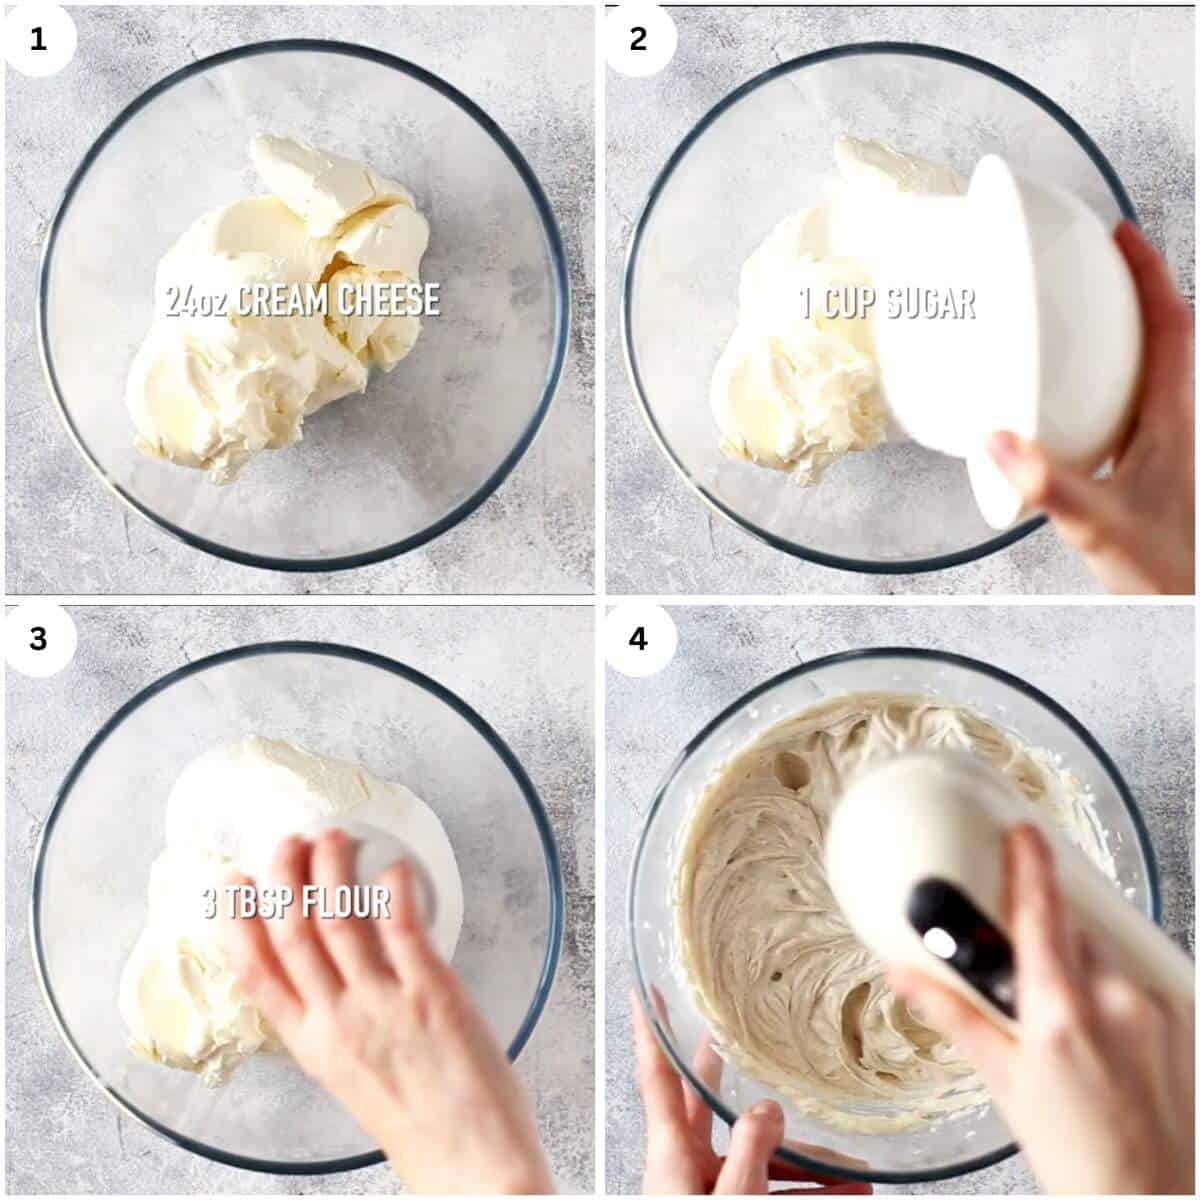 beating cream cheese, sugar, and flour